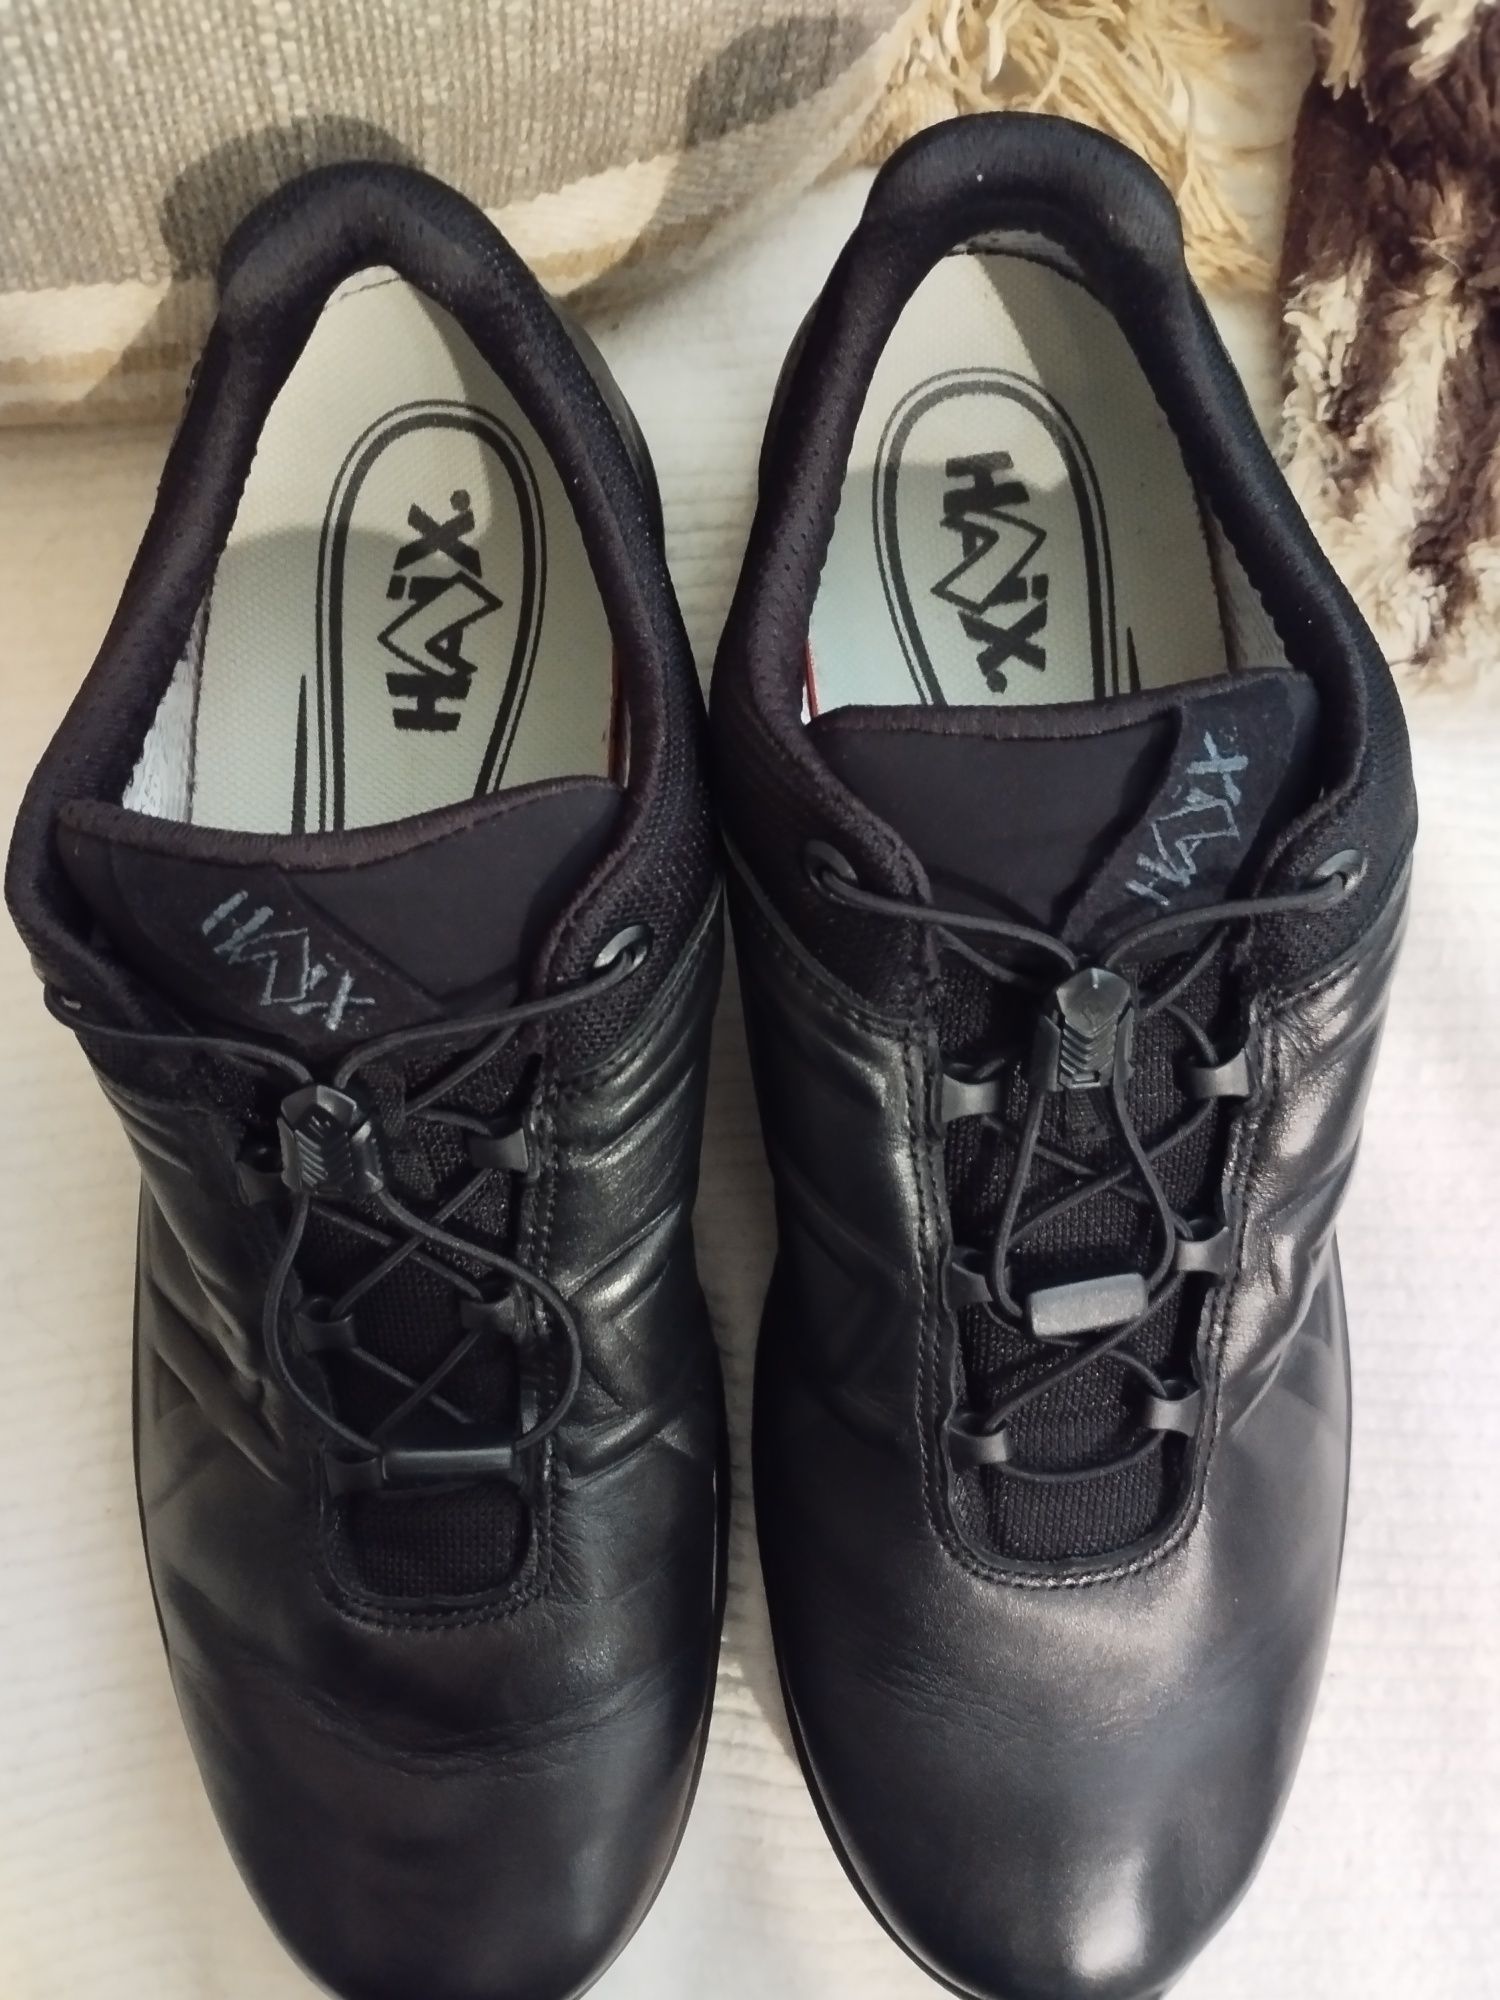 №45 Турустически обувки Haix "Black Eagle Tactical 2.1 GTX" като нови